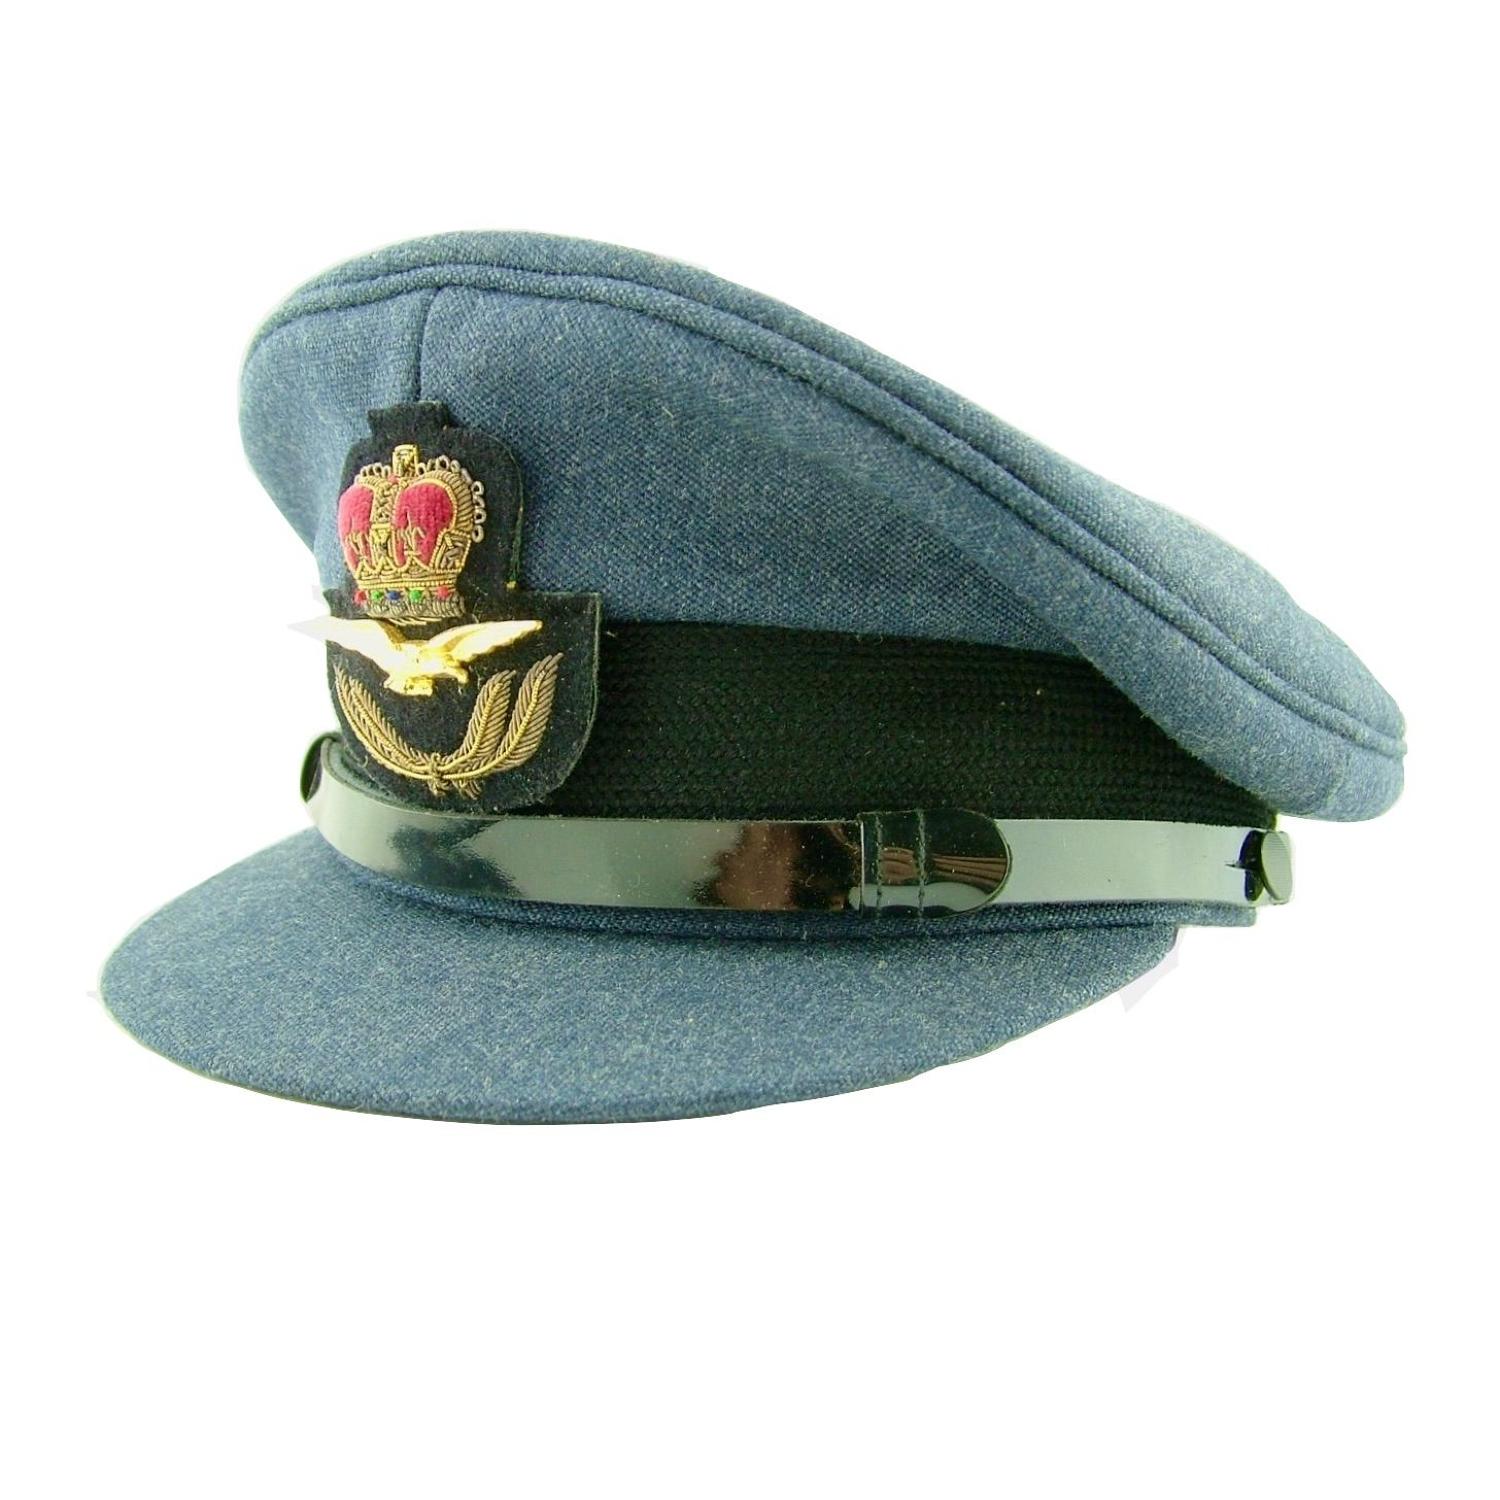 RAF service dress cap - postwar